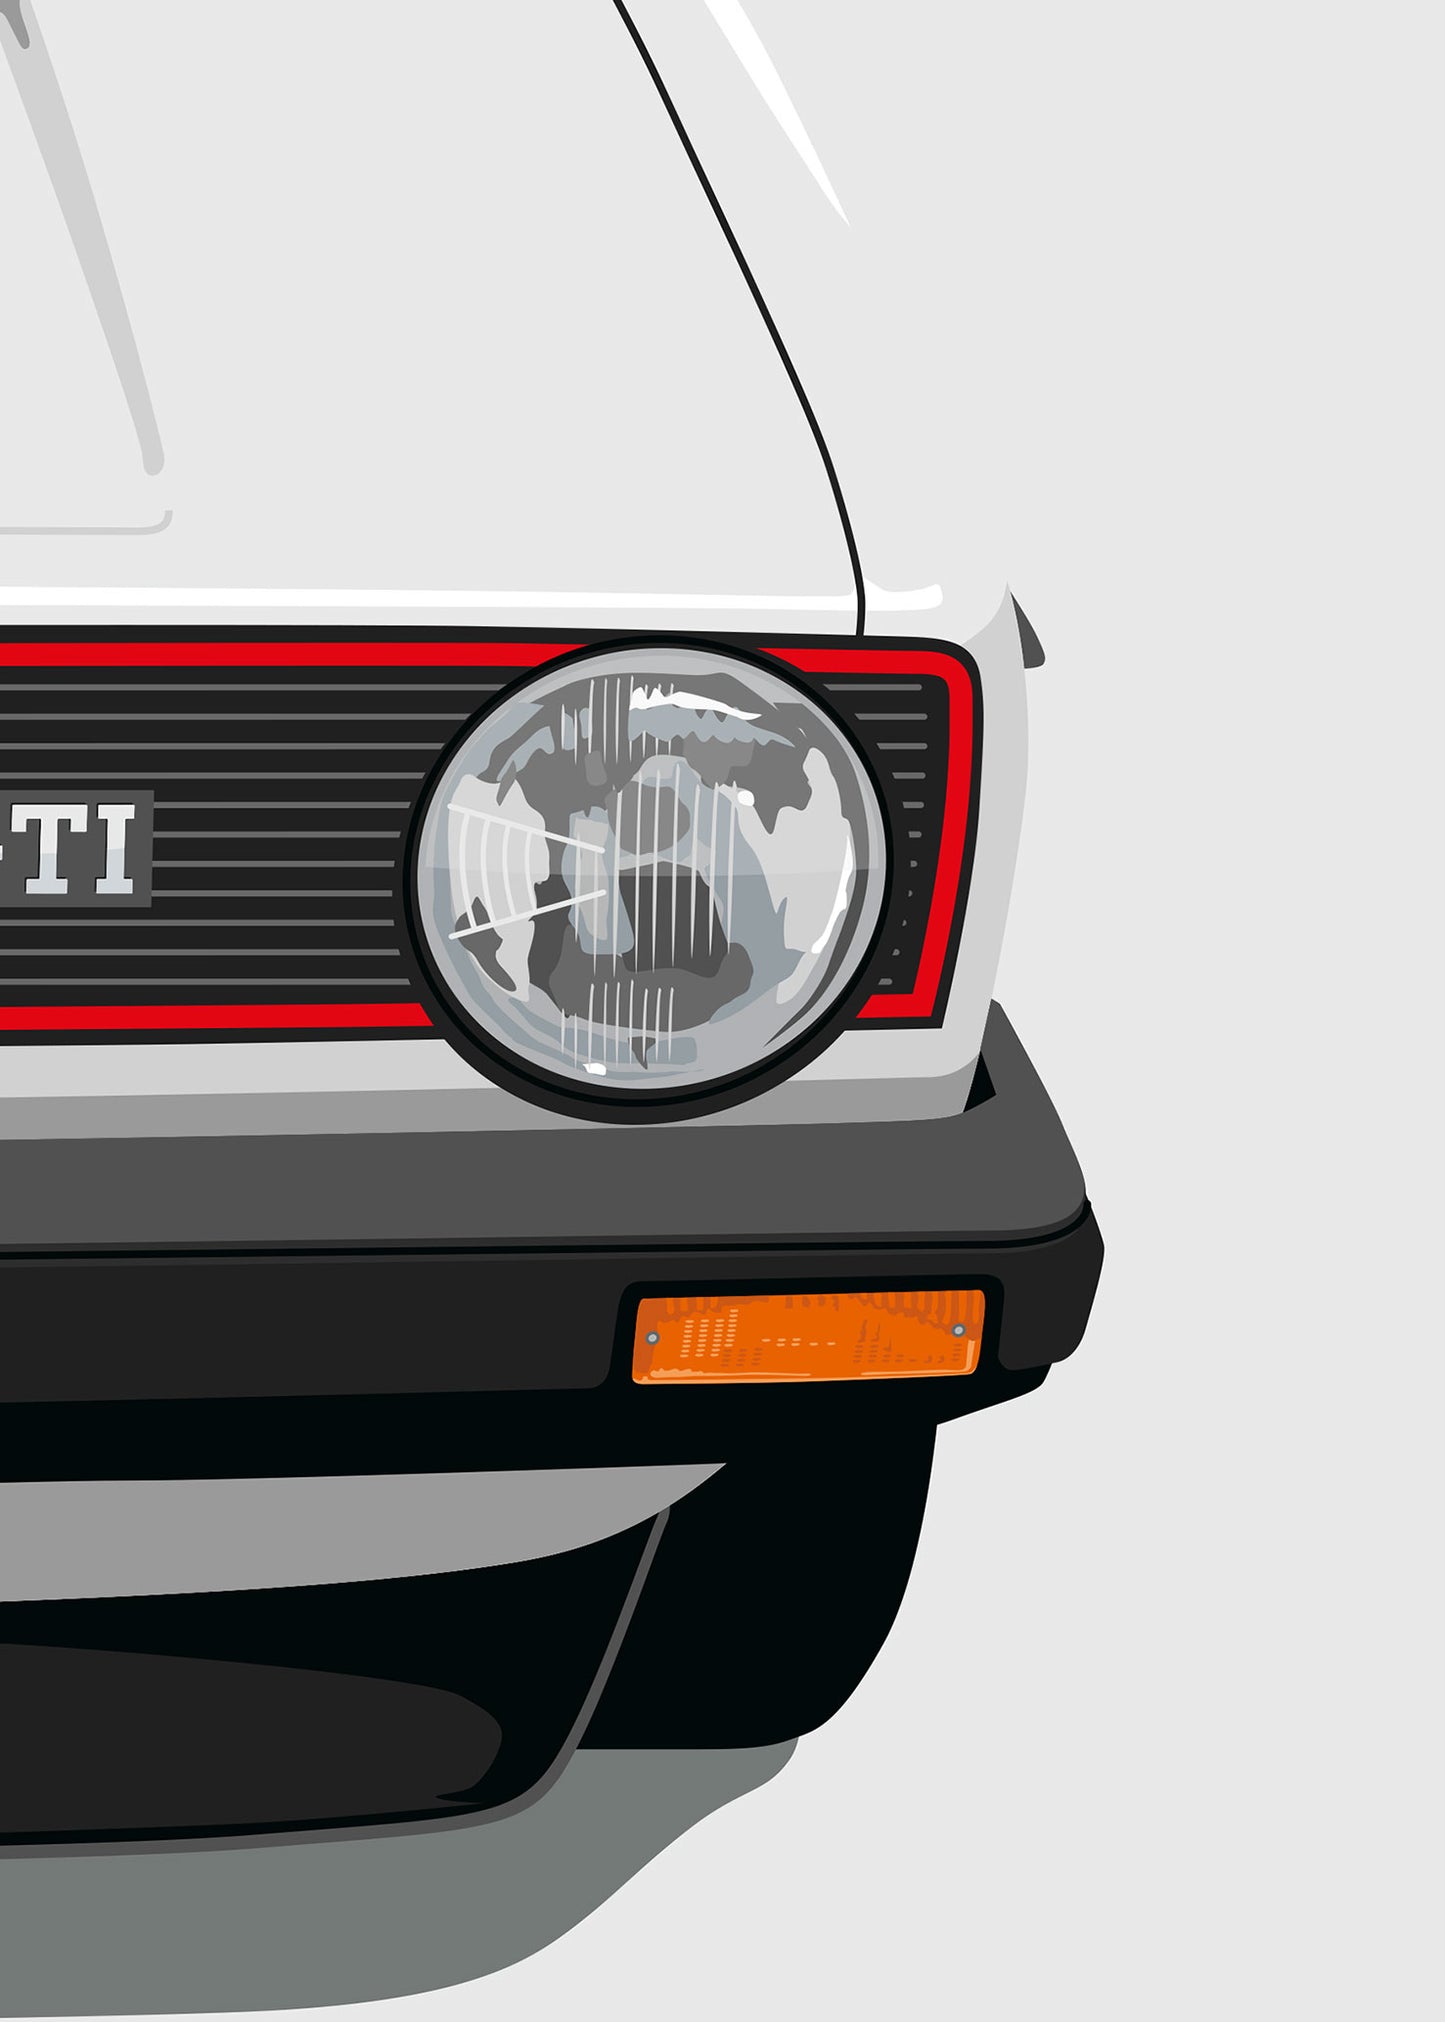 1980 Volkswagen Golf GTI (Mk1) - Alpine White - poster print